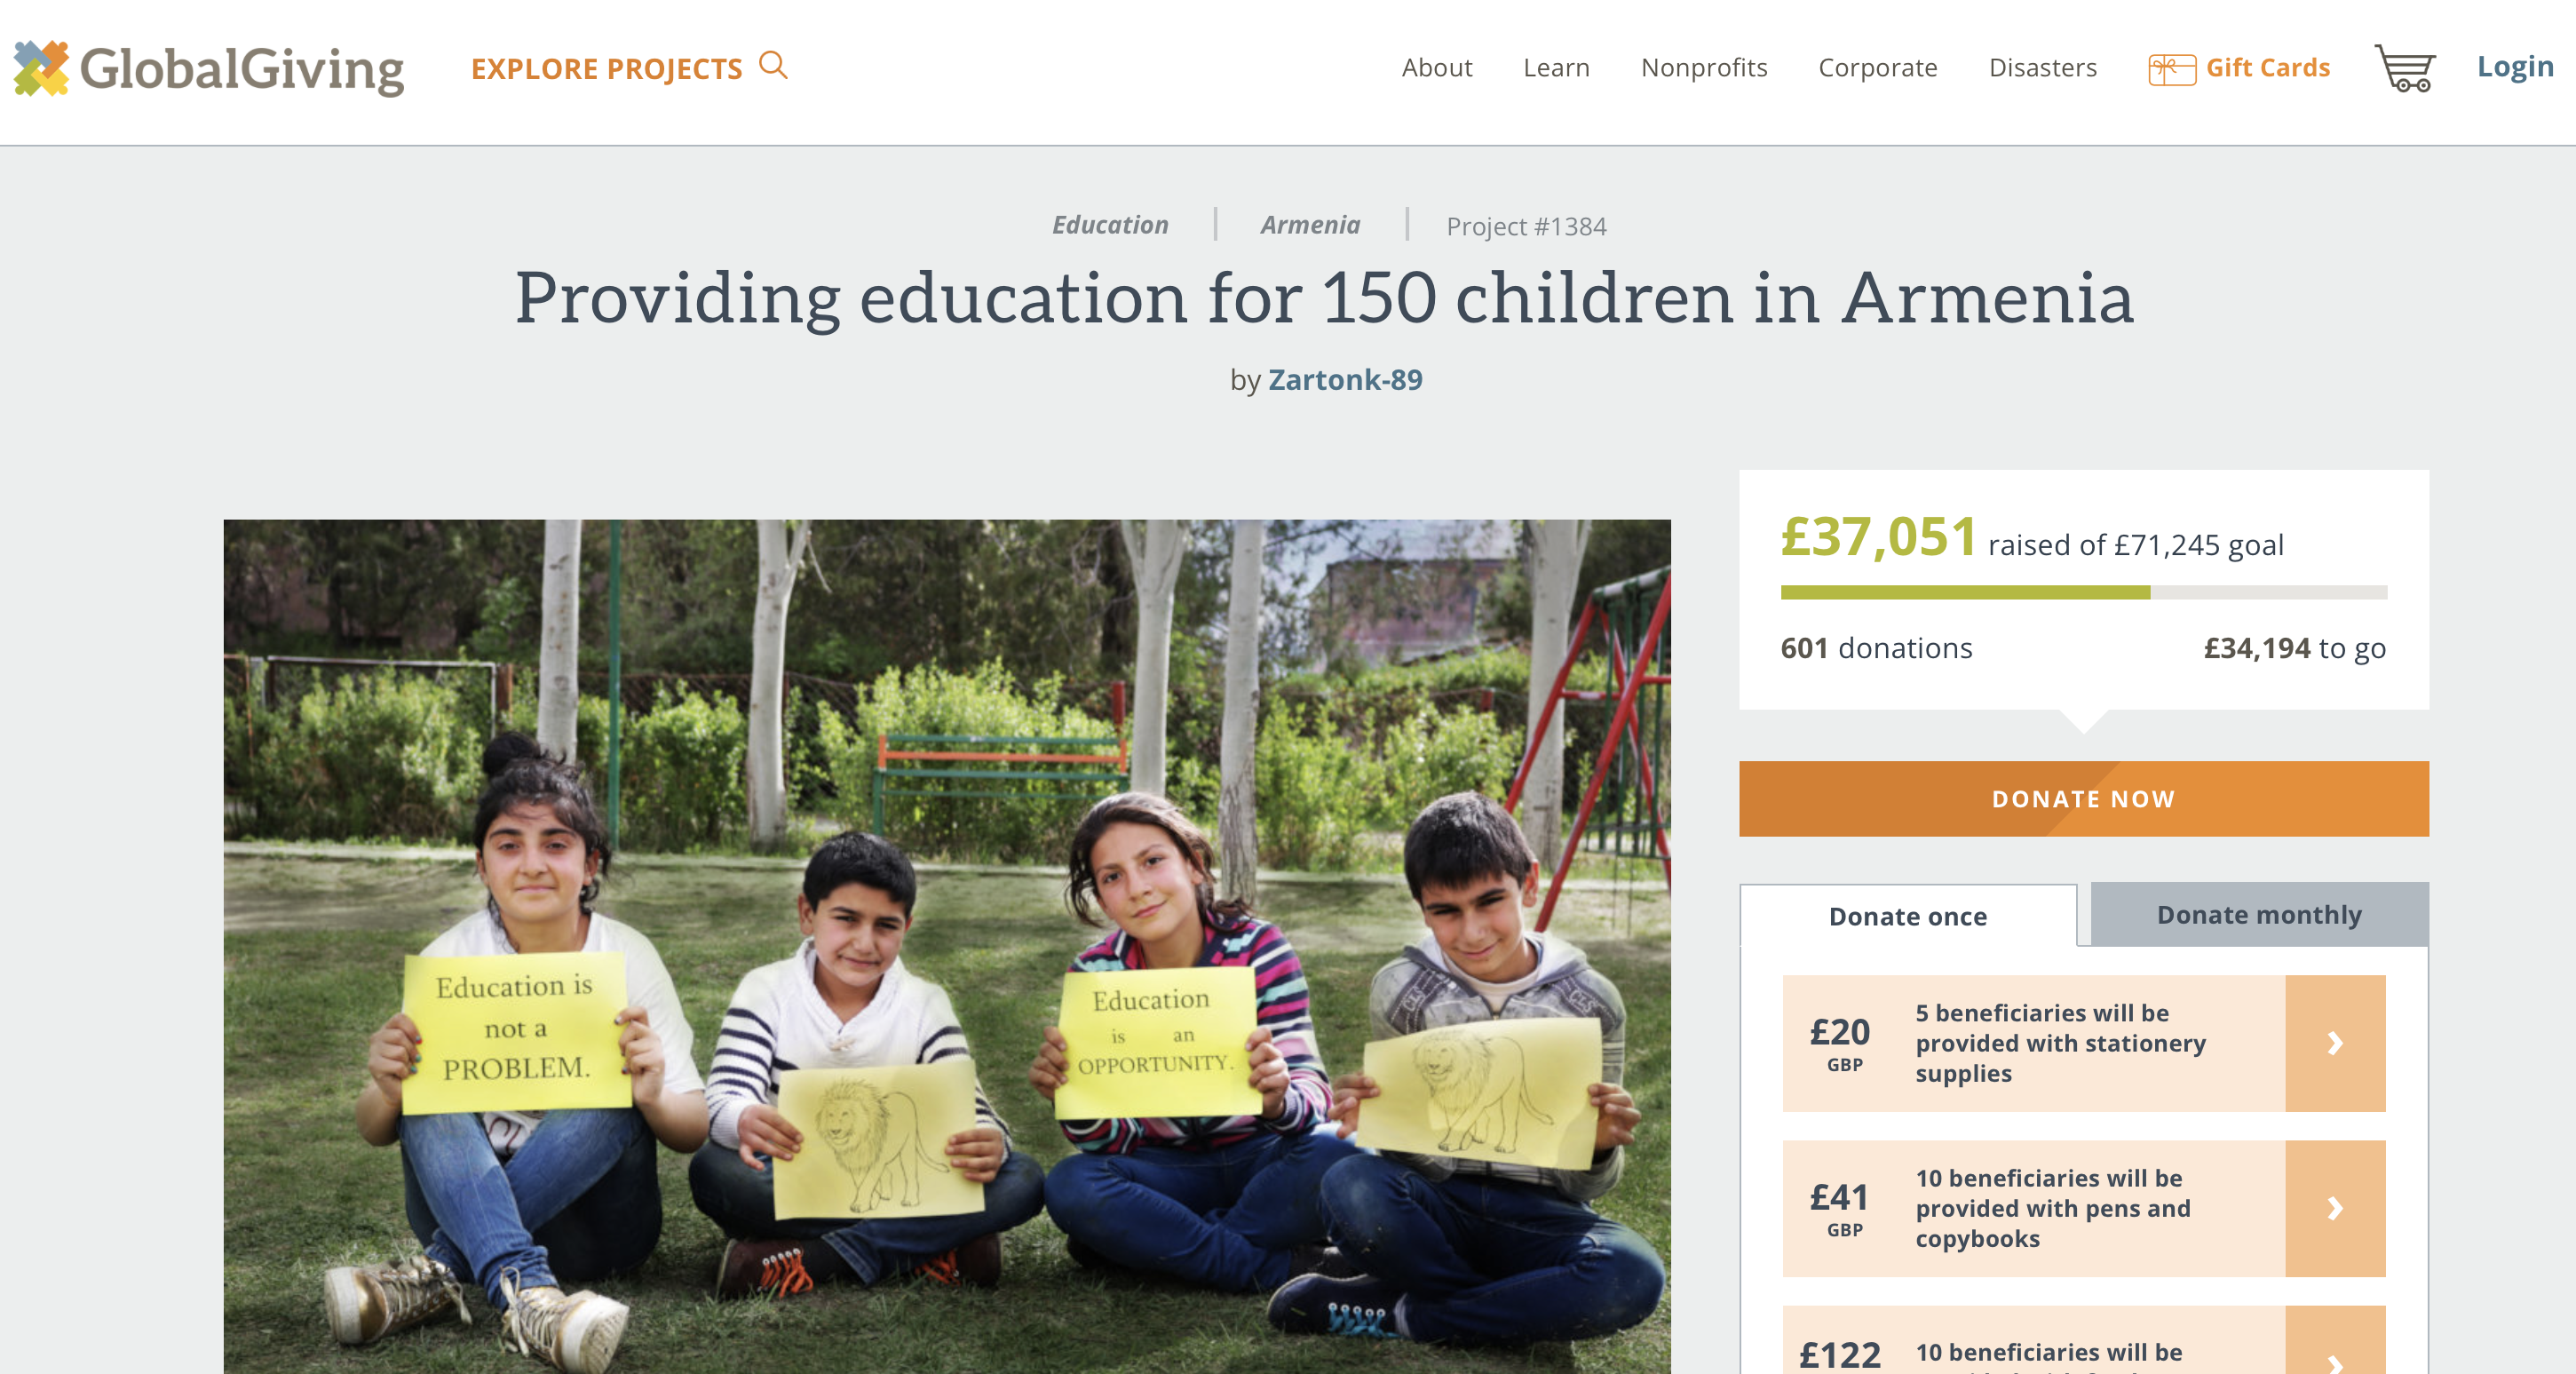 Michael Scott: Providing education for 150 children in Armenia